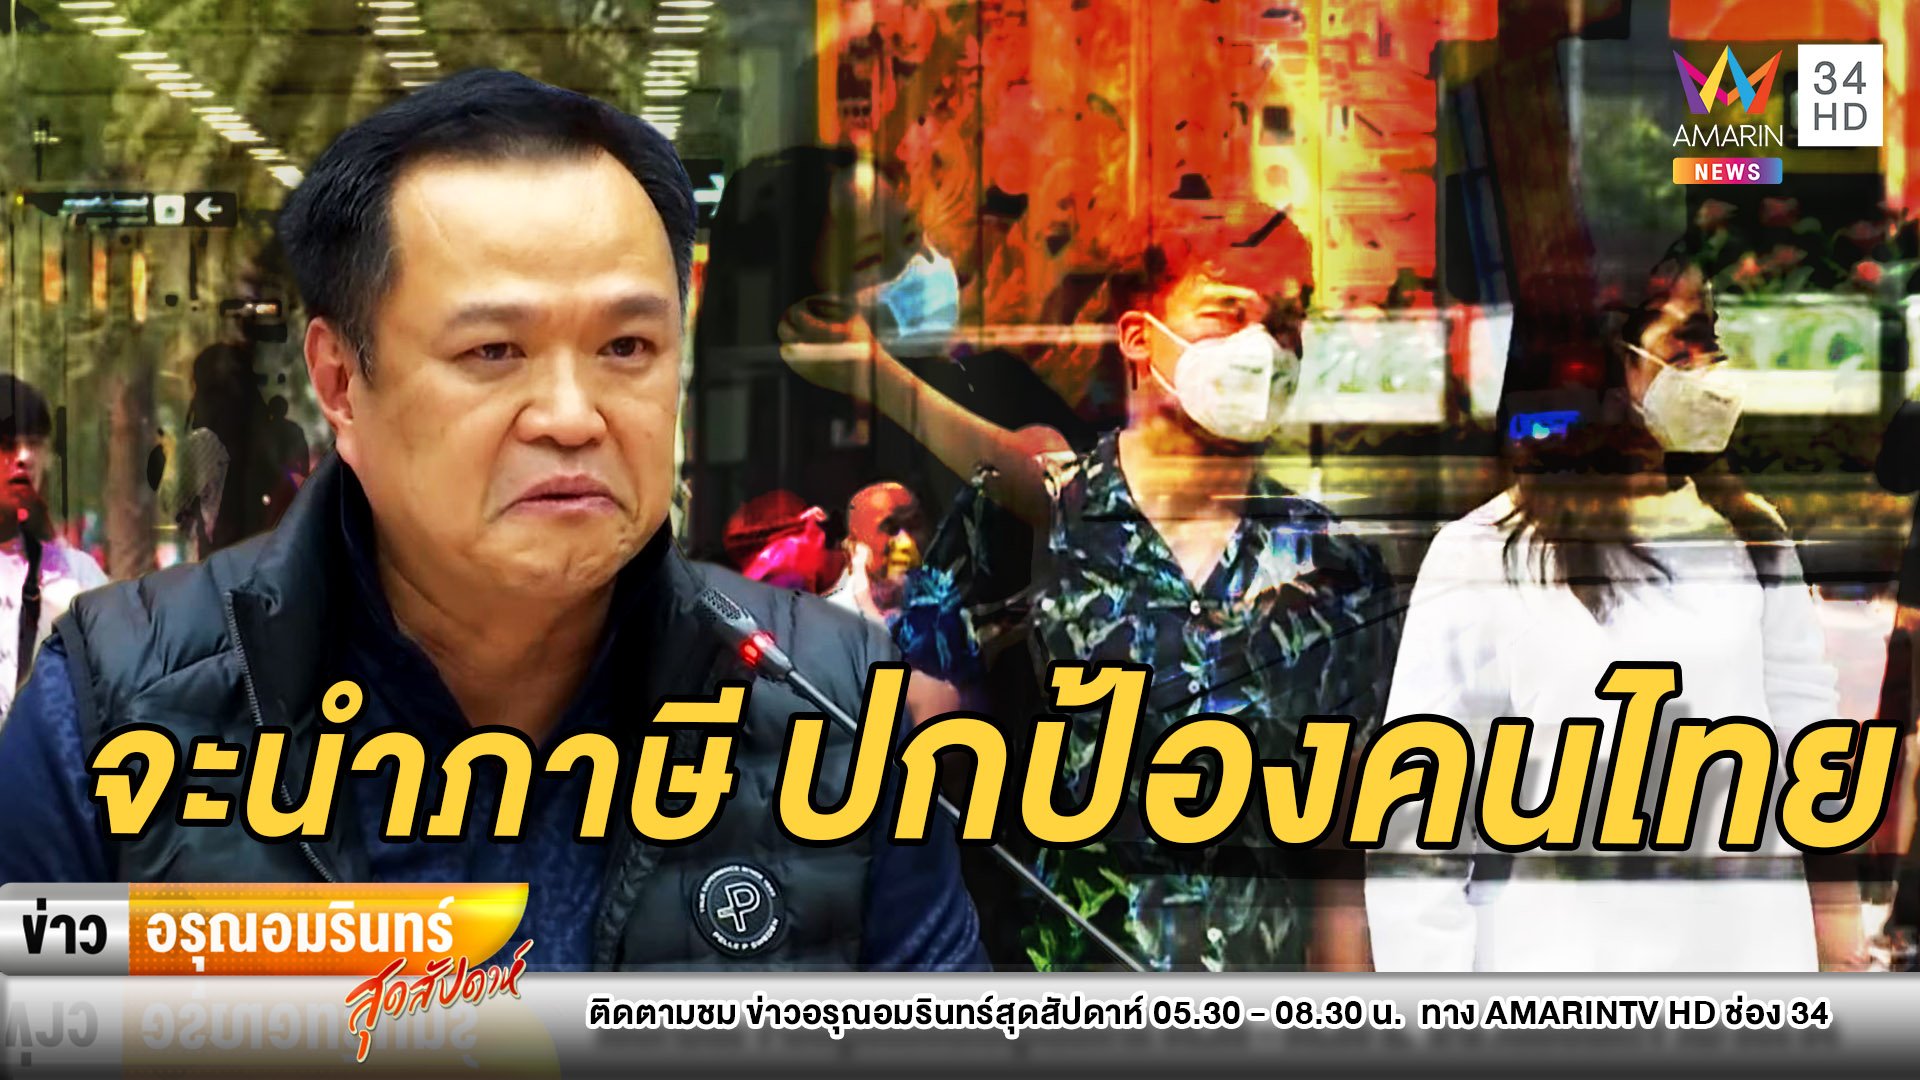 หลั่งน้ำตา! “อนุทิน” ยืนยันจะนำภาษีทุกบาทมาปกป้องคนไทย | ข่าวอรุณอมรินทร์ สุดสัปดาห์ | 22 มี.ค. 63 | AMARIN TVHD34